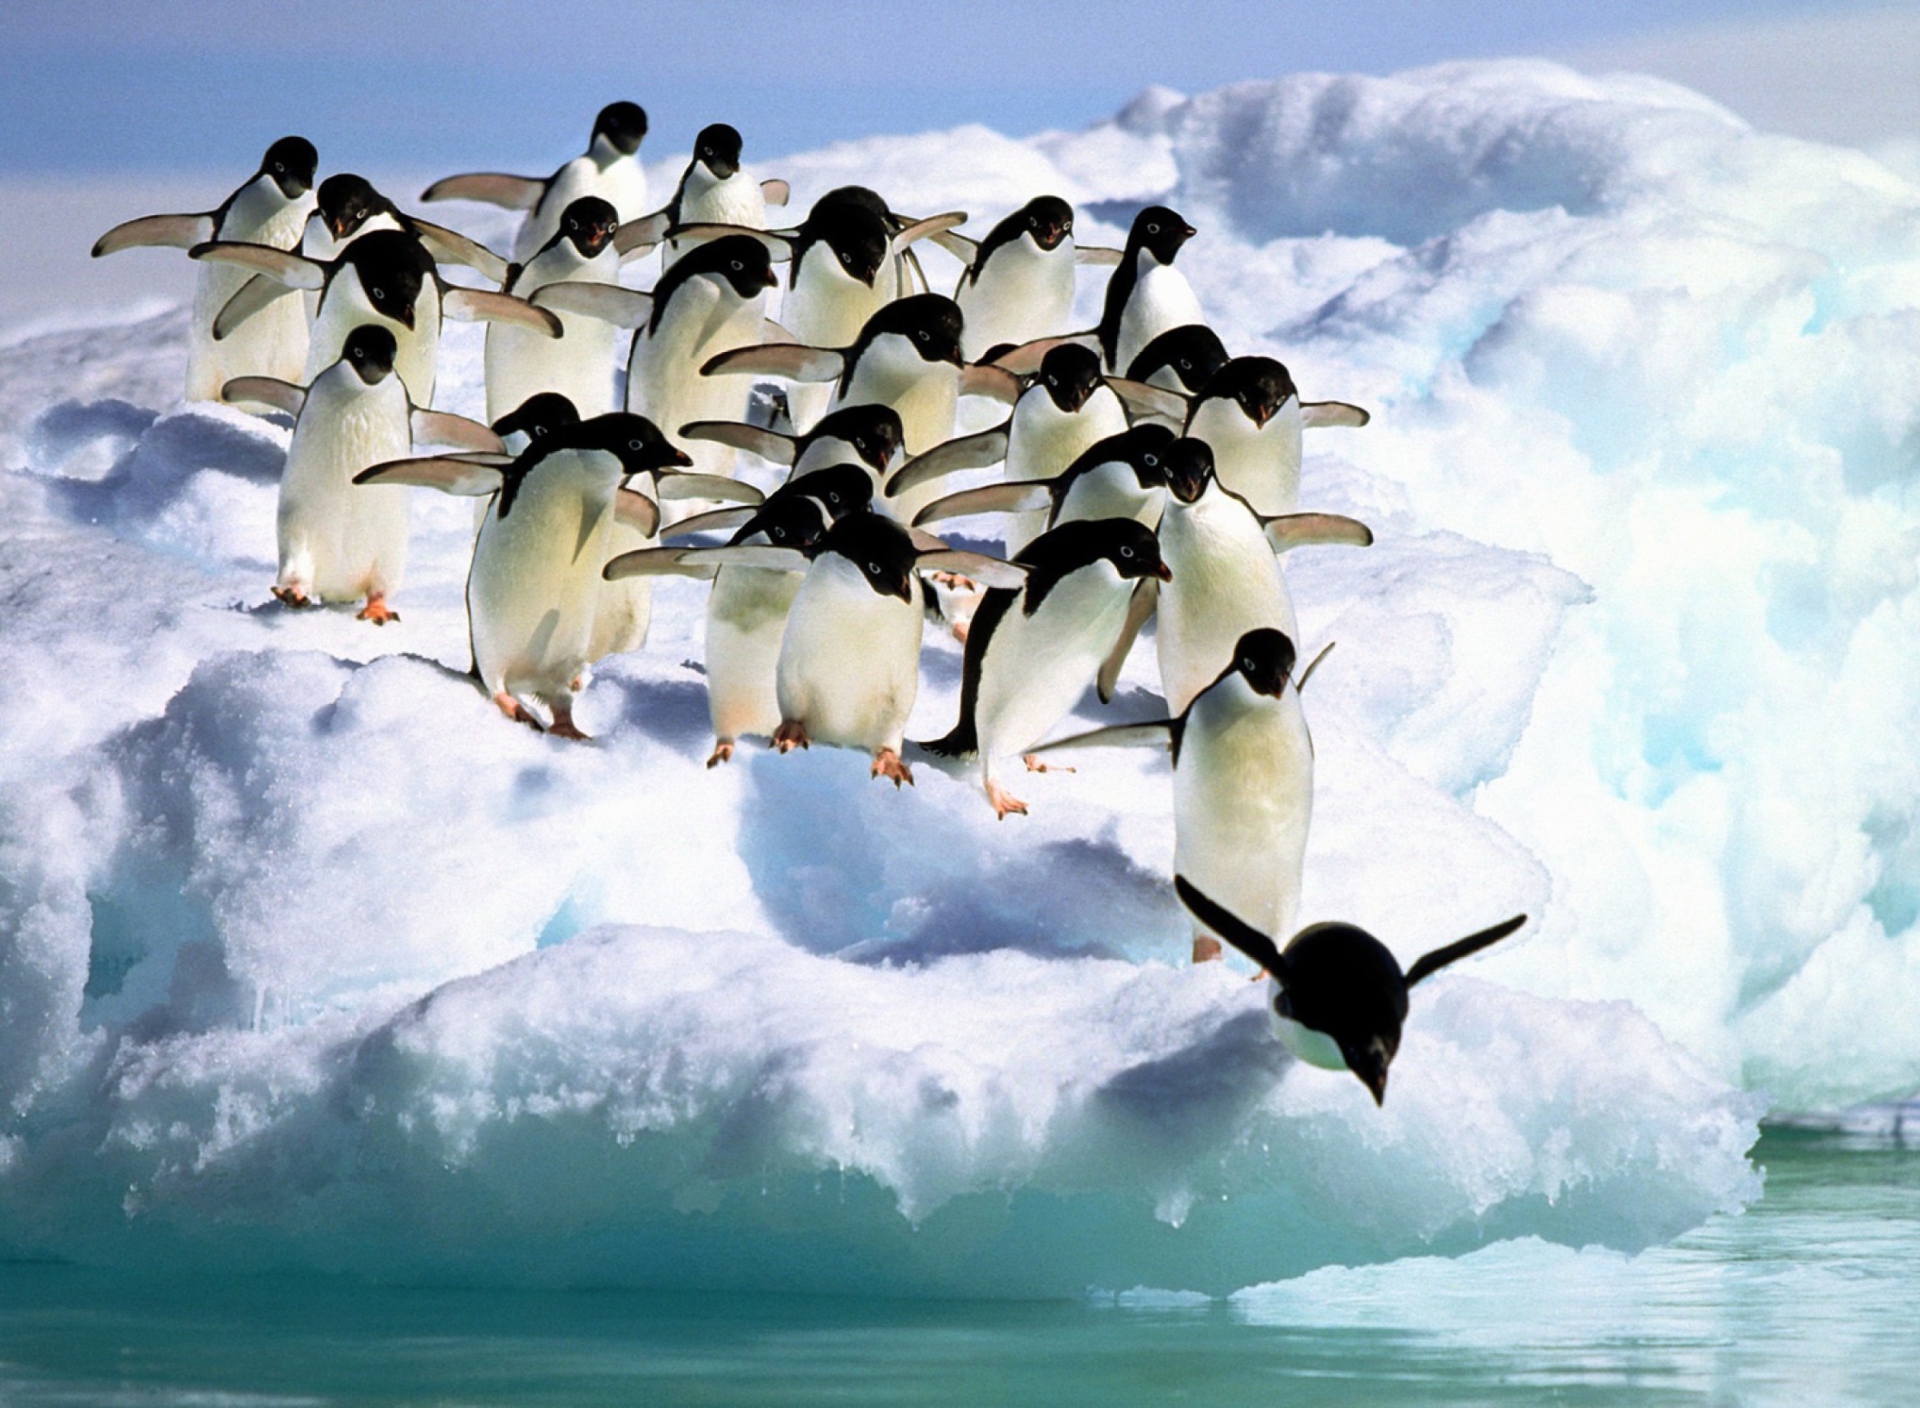 Обои Penguins On An Iceberg 1920x1408